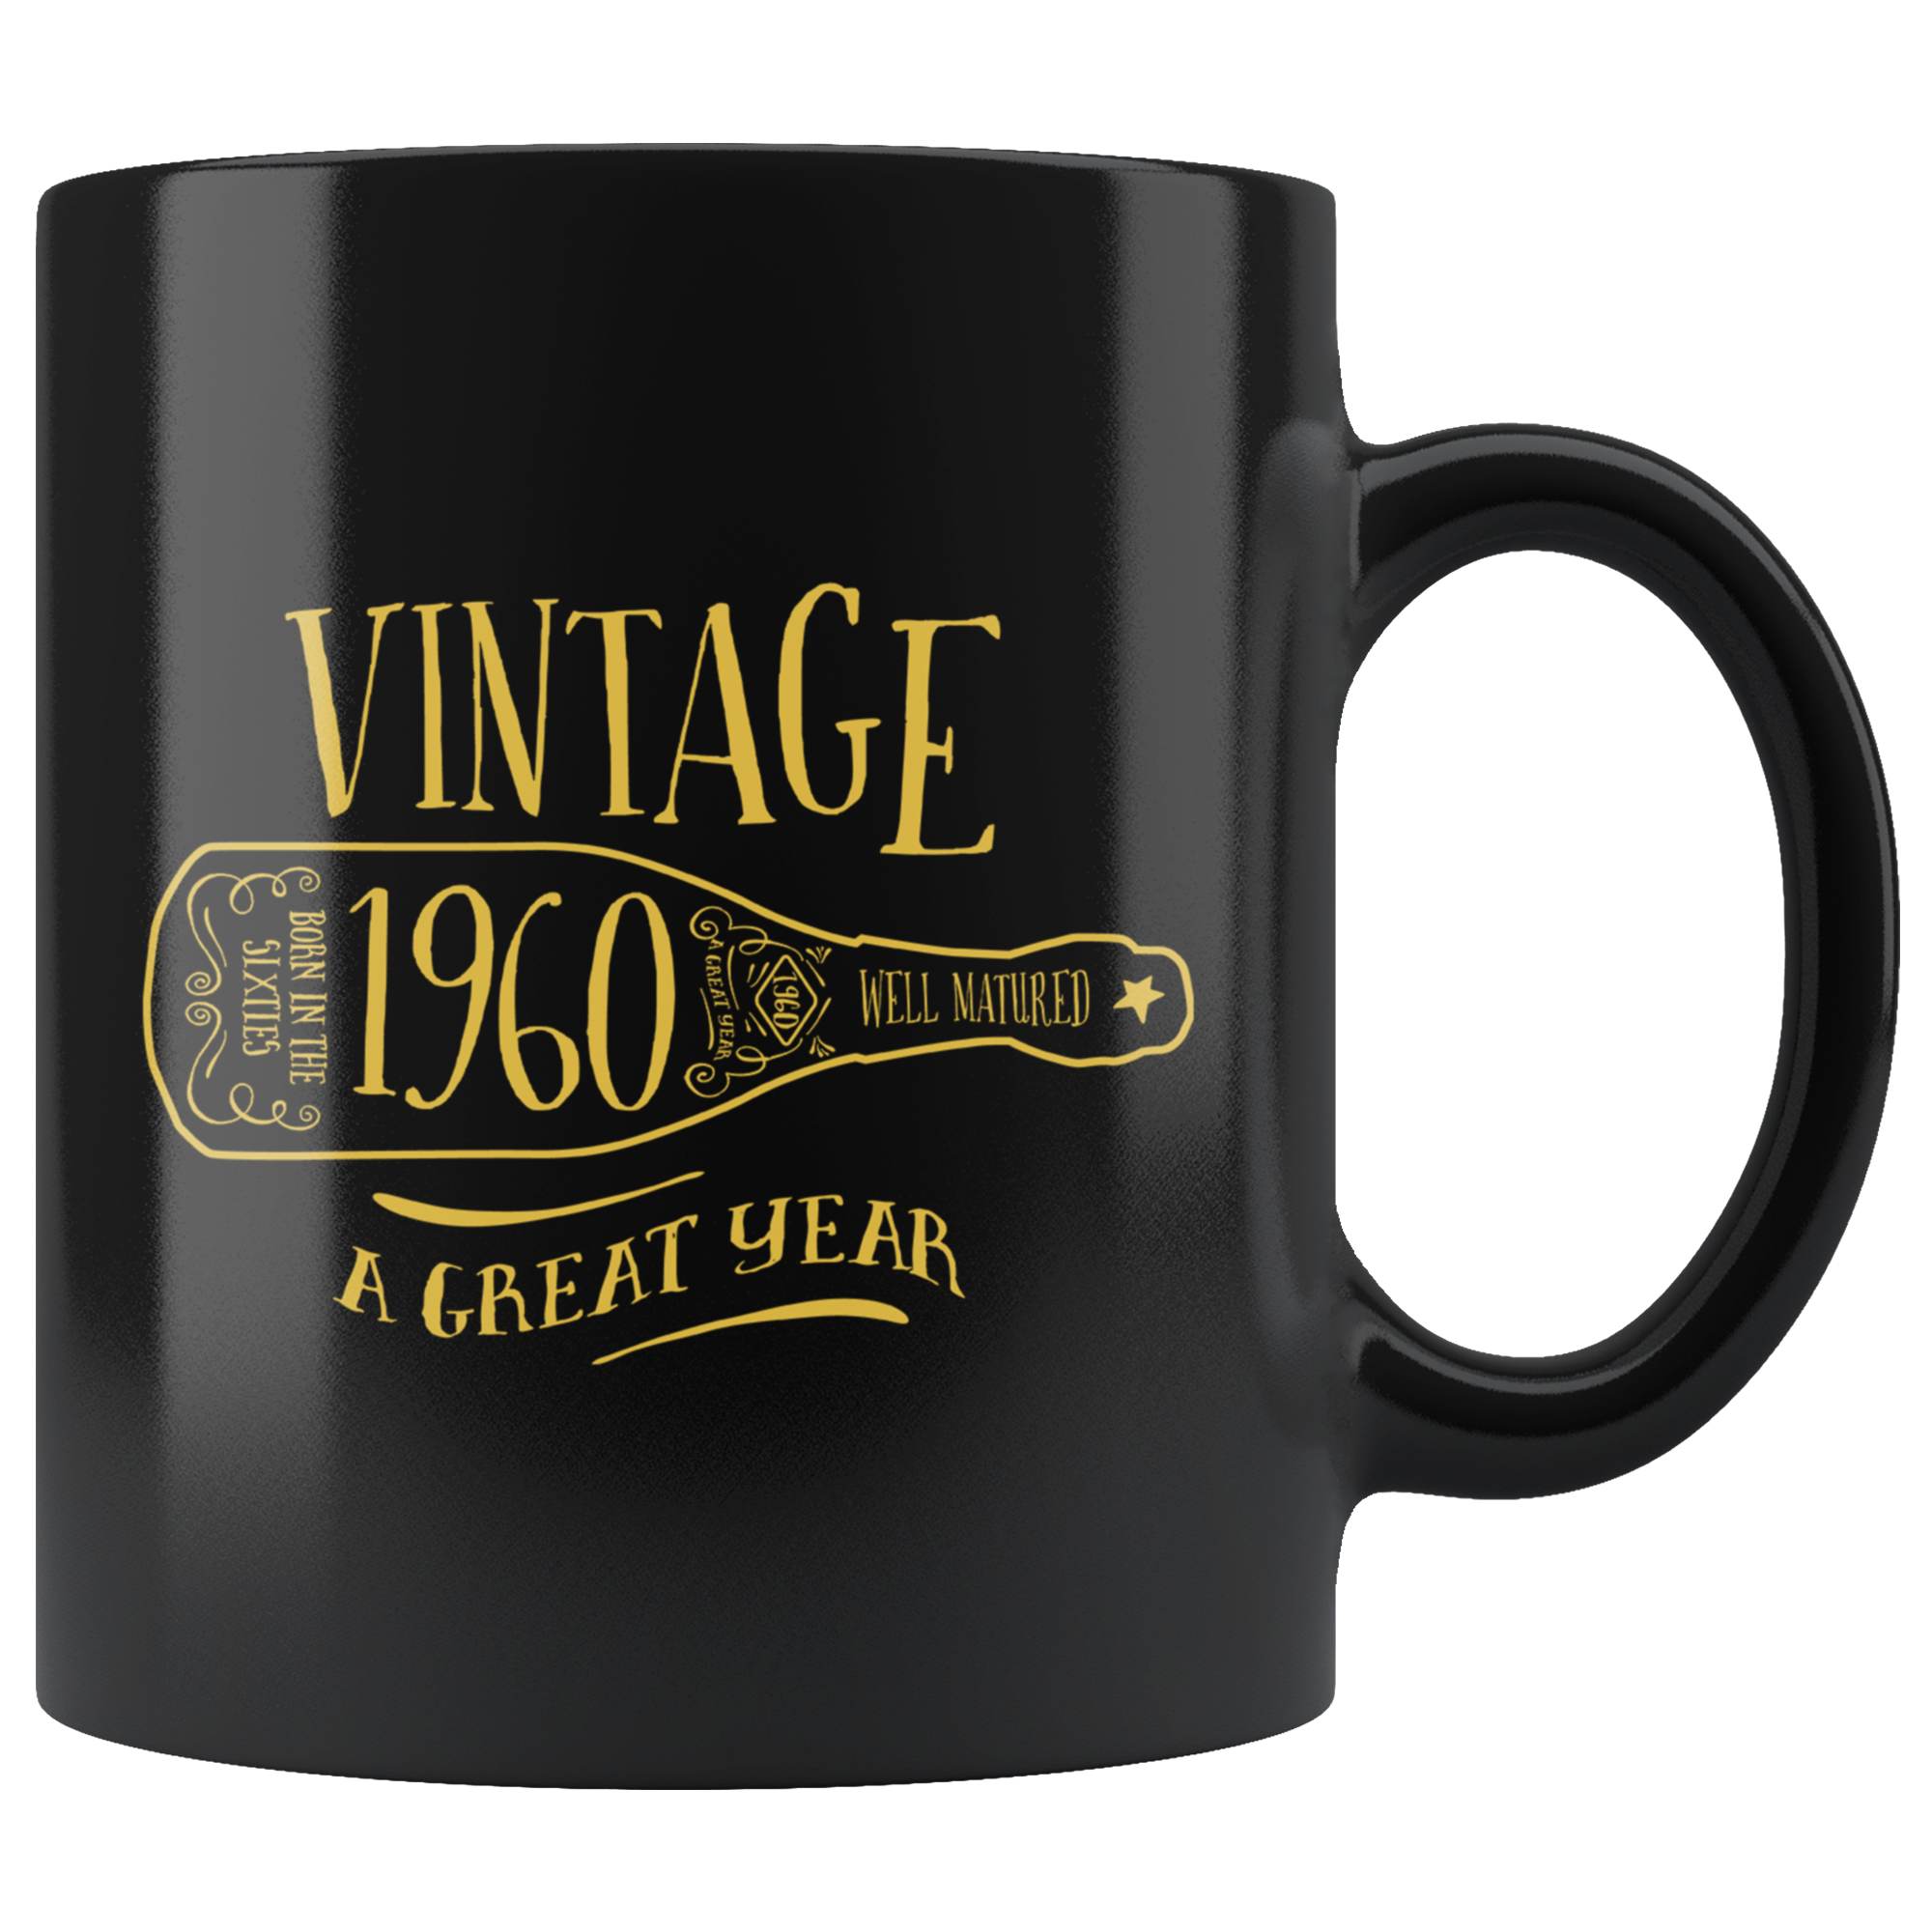 Vintage 1960 - Black Mug